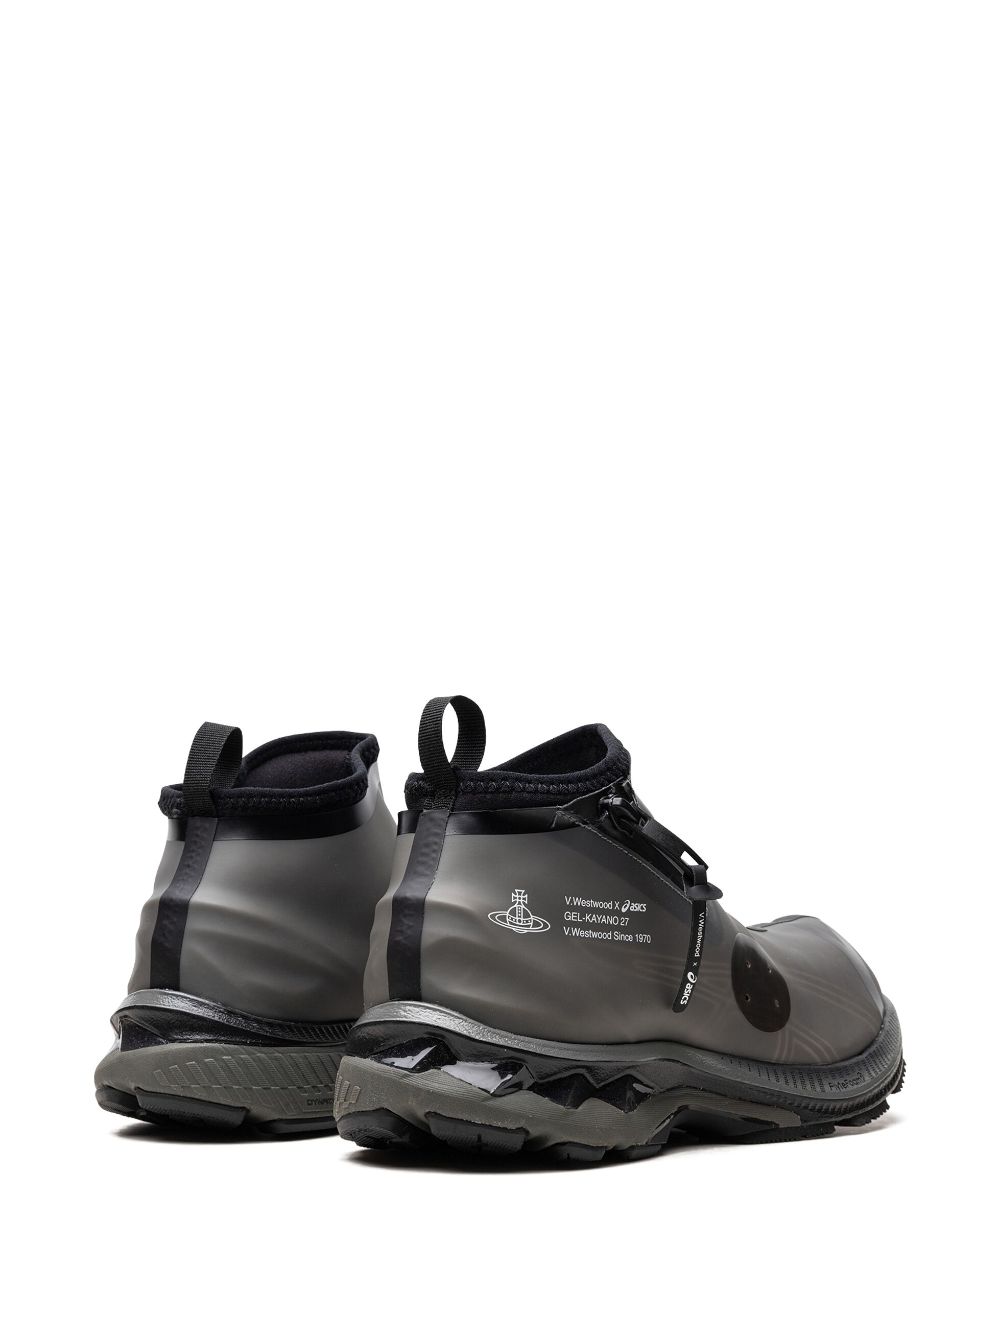 Shop Asics X Vivienne Westwood Gel-kayano™ 27 Ltx Sneakers In Black